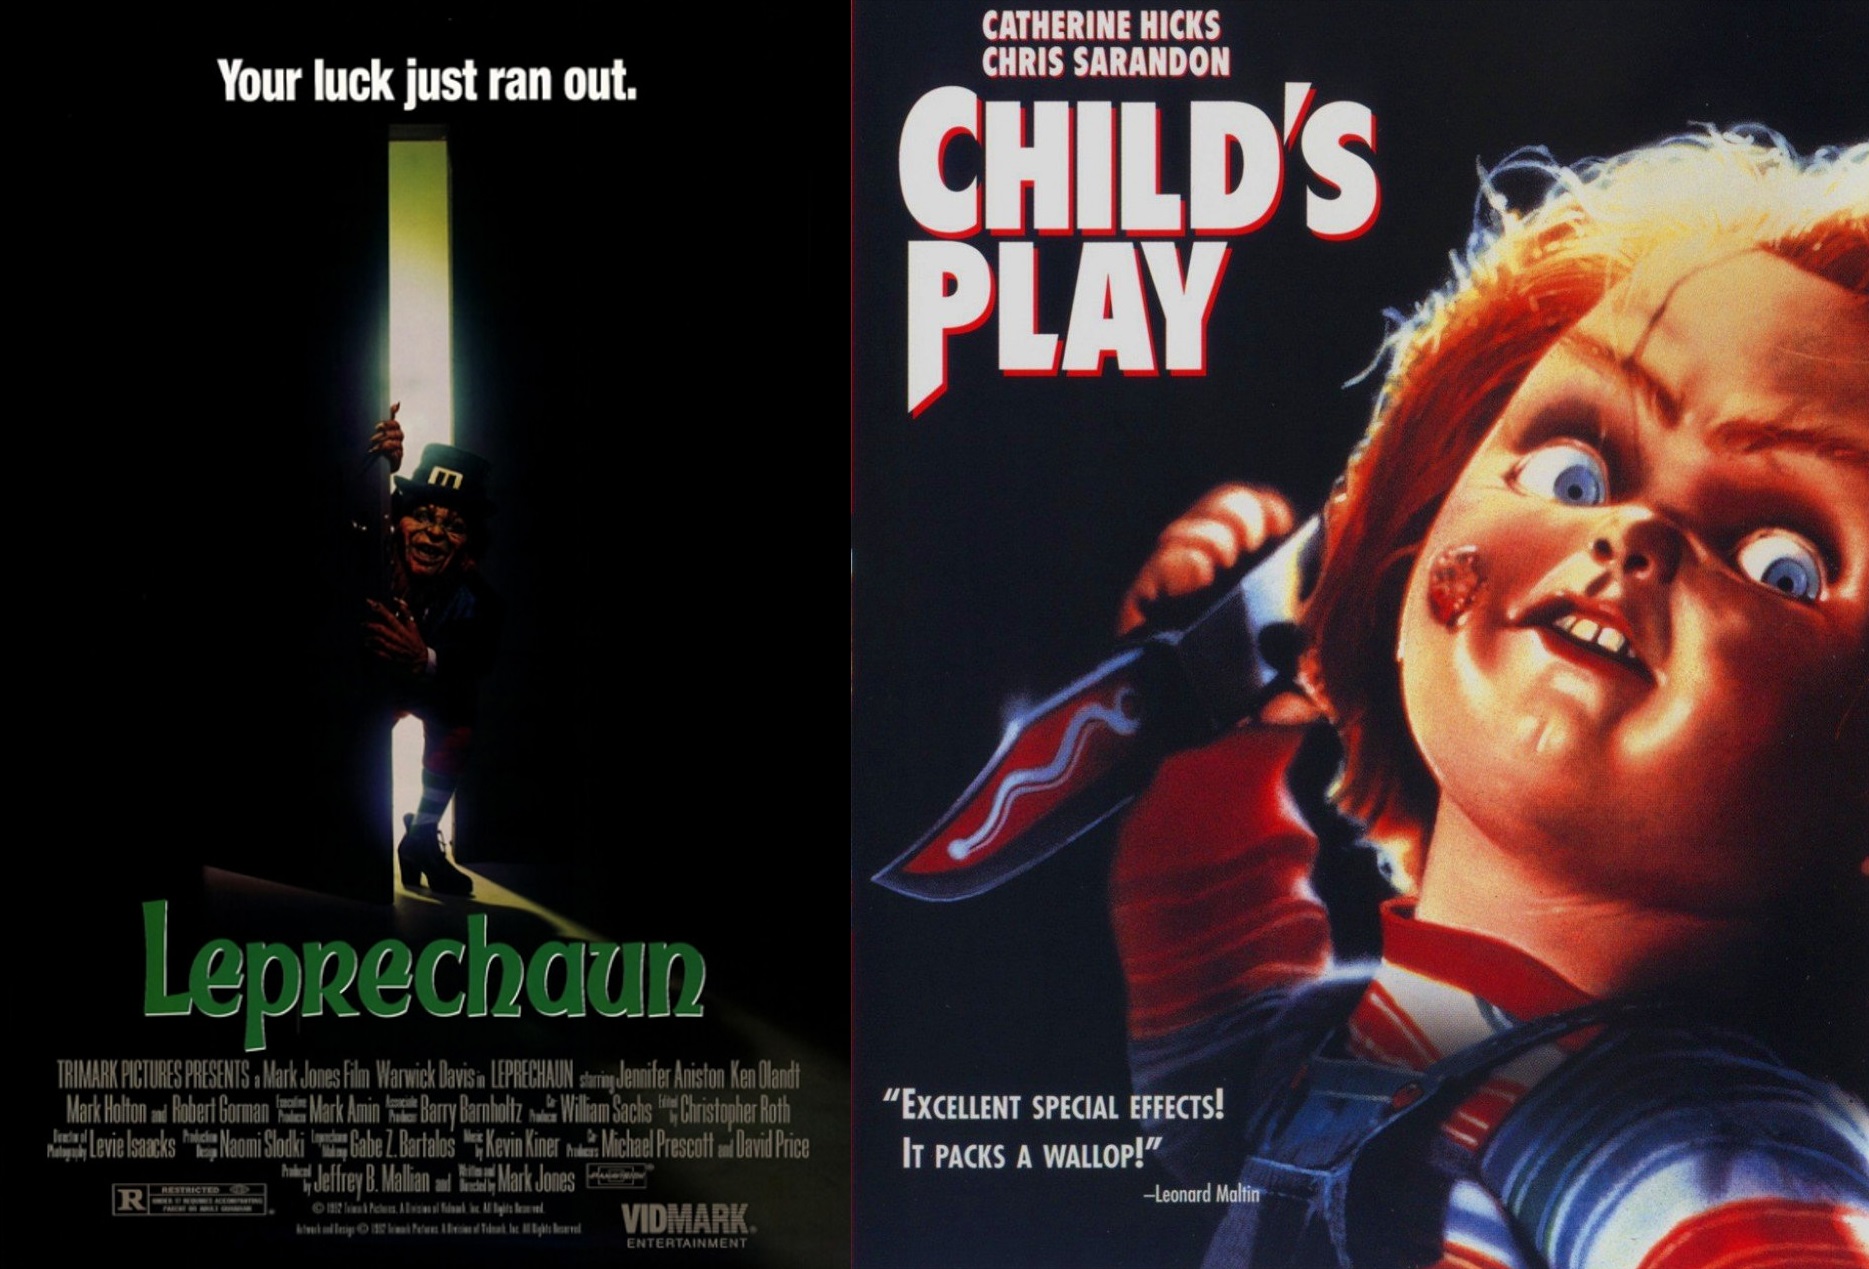 Chucky vs. Leprechaun terror